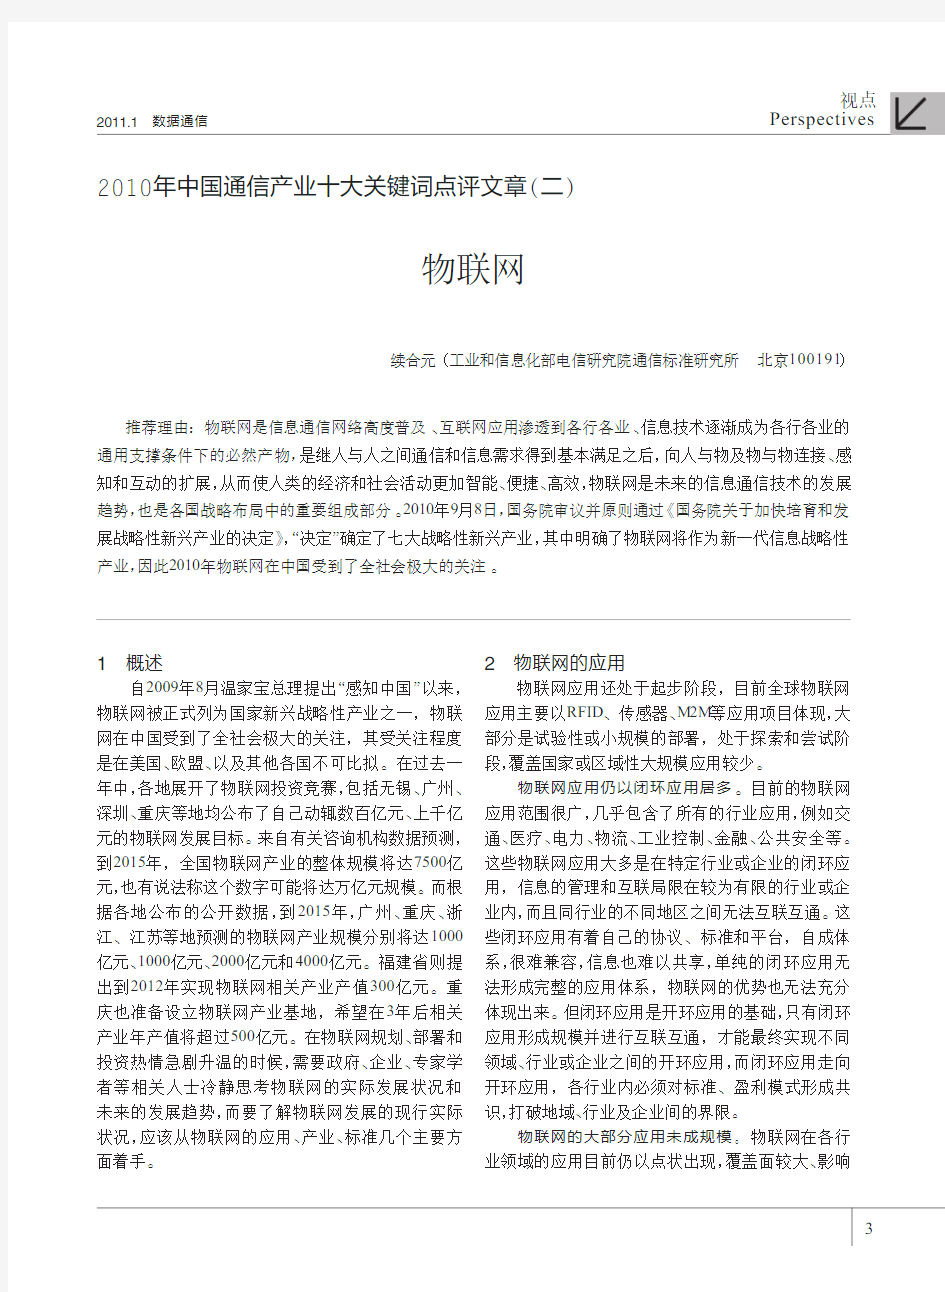 2010年中国通信产业十大关键词点评文章_二_物联网